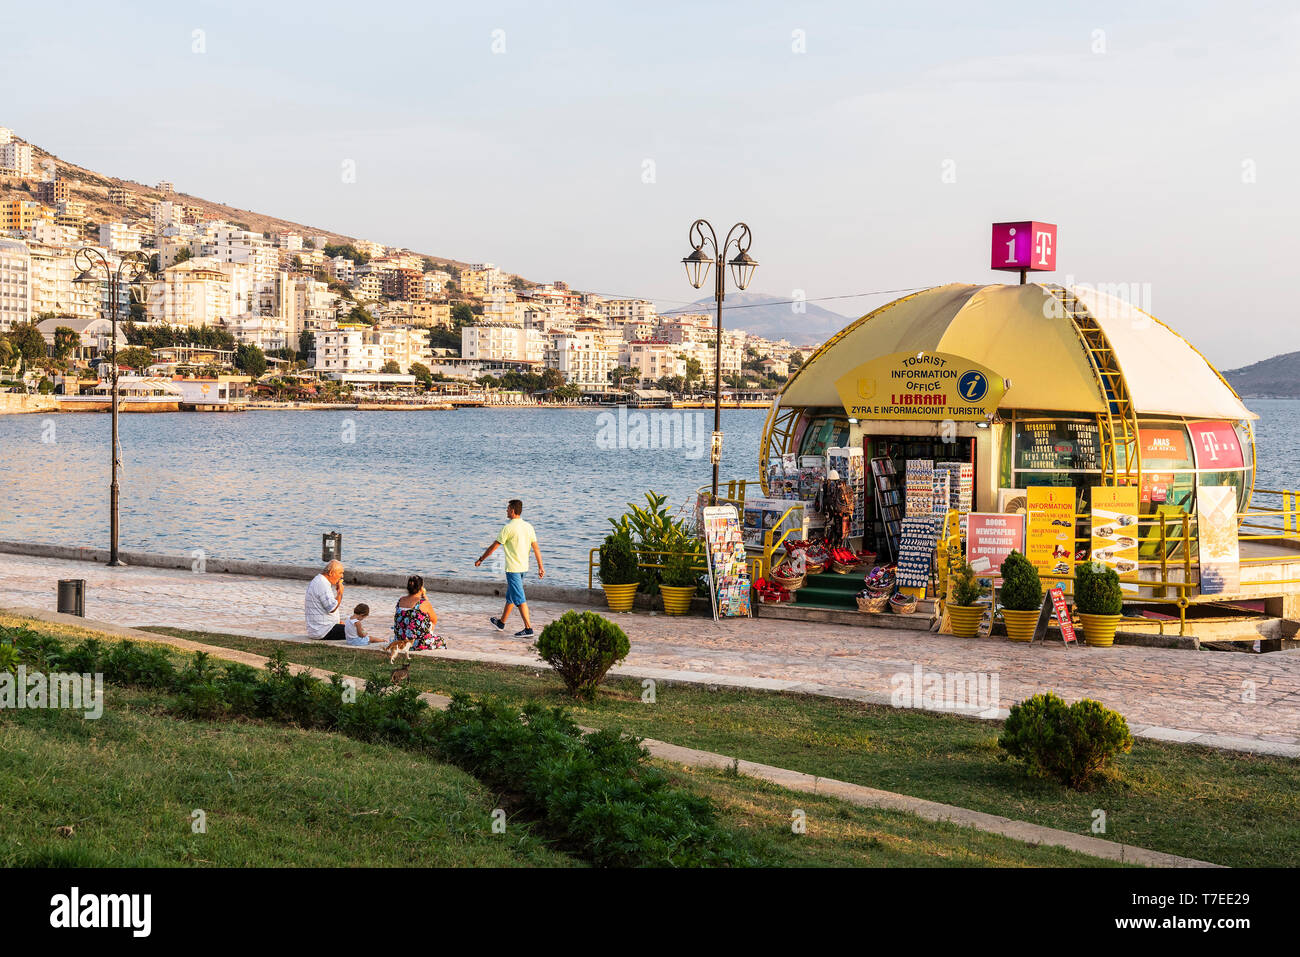 Información turística, promenade, Saranda, Mar Jónico, Albania Foto de stock